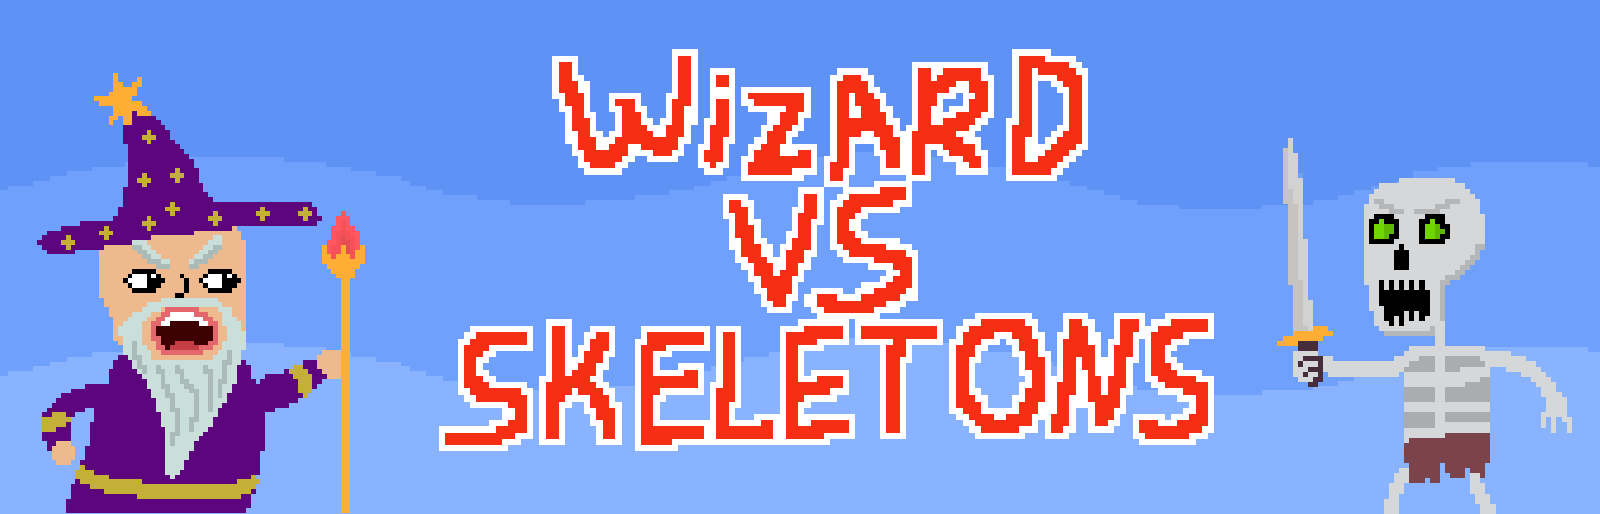 Wizard VS Skeletons